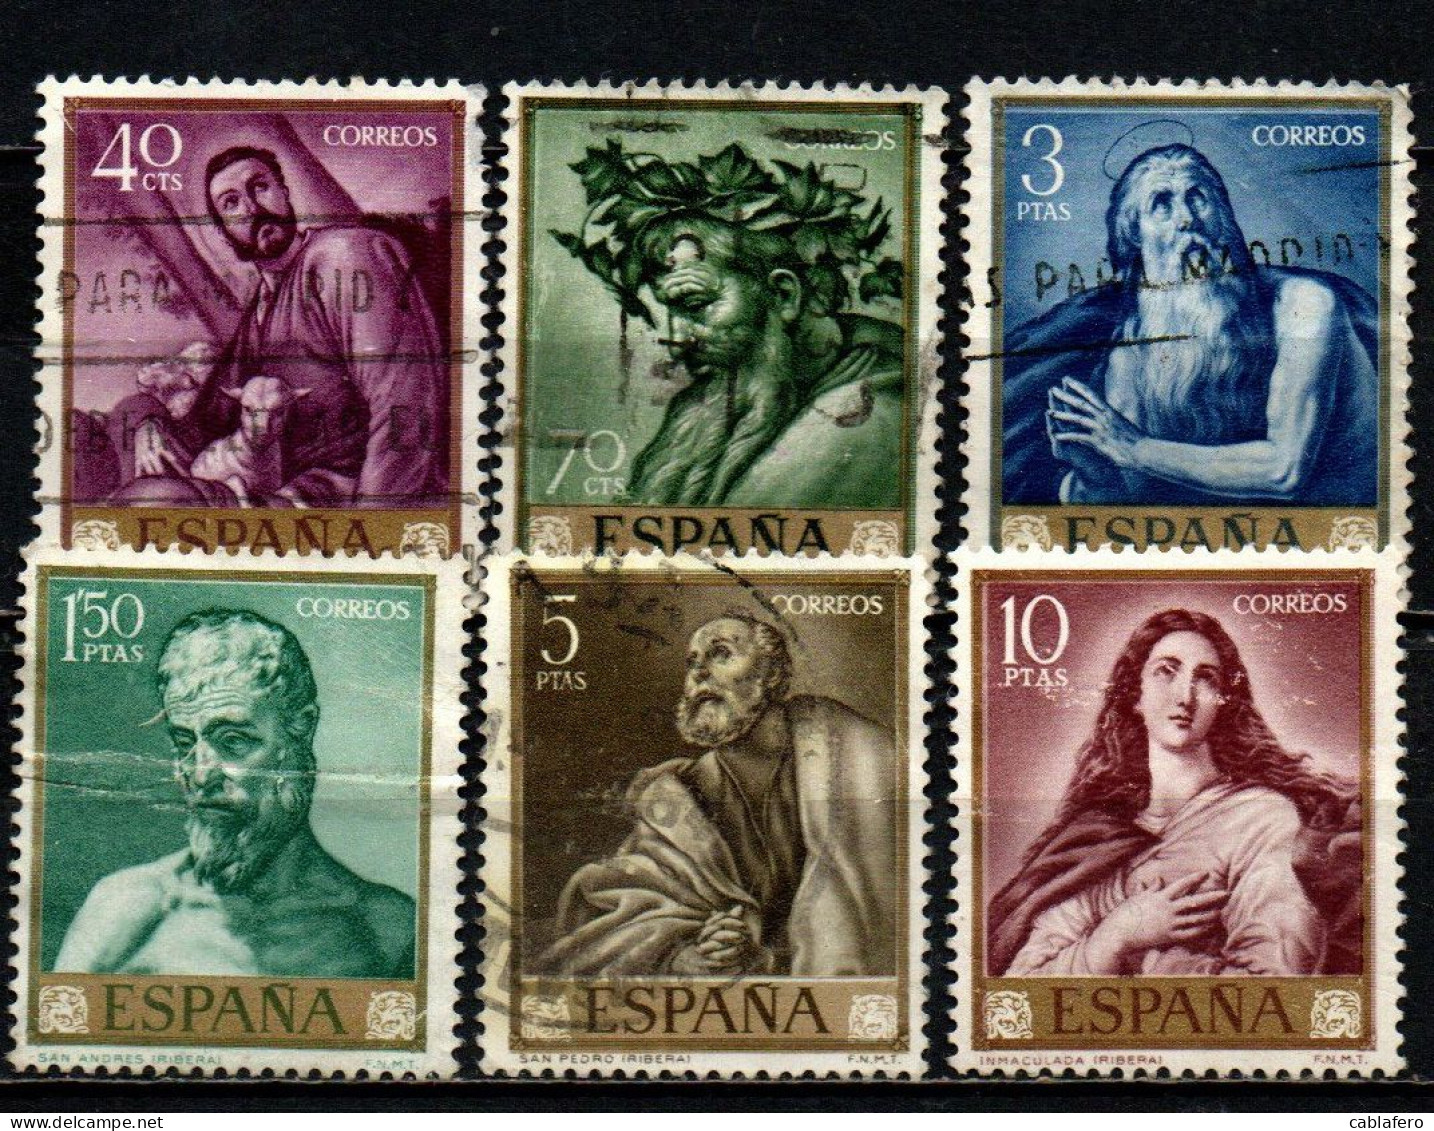 SPAGNA - 1963 - DIPINTI DI JOSE' DE RIBERA DETTO "LO SPAGNOLETTO" - USATI - Used Stamps